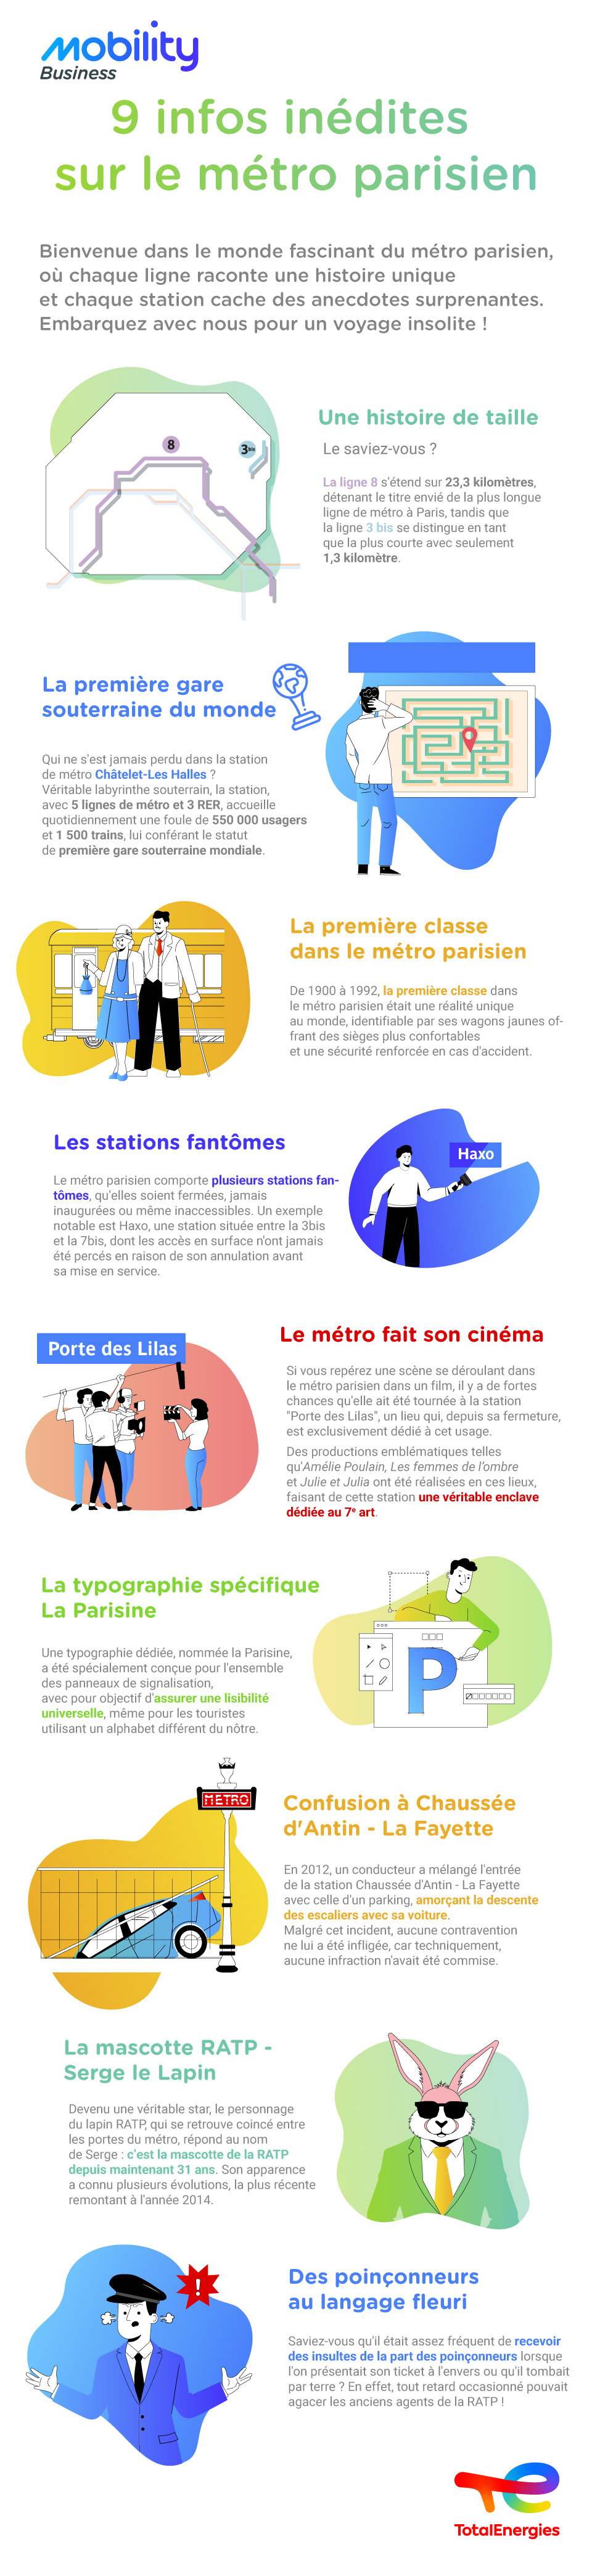 Illustration présentant des faits intéressants sur le métro parisien, avec des personnages et des scènes représentatives de chaque anecdote.